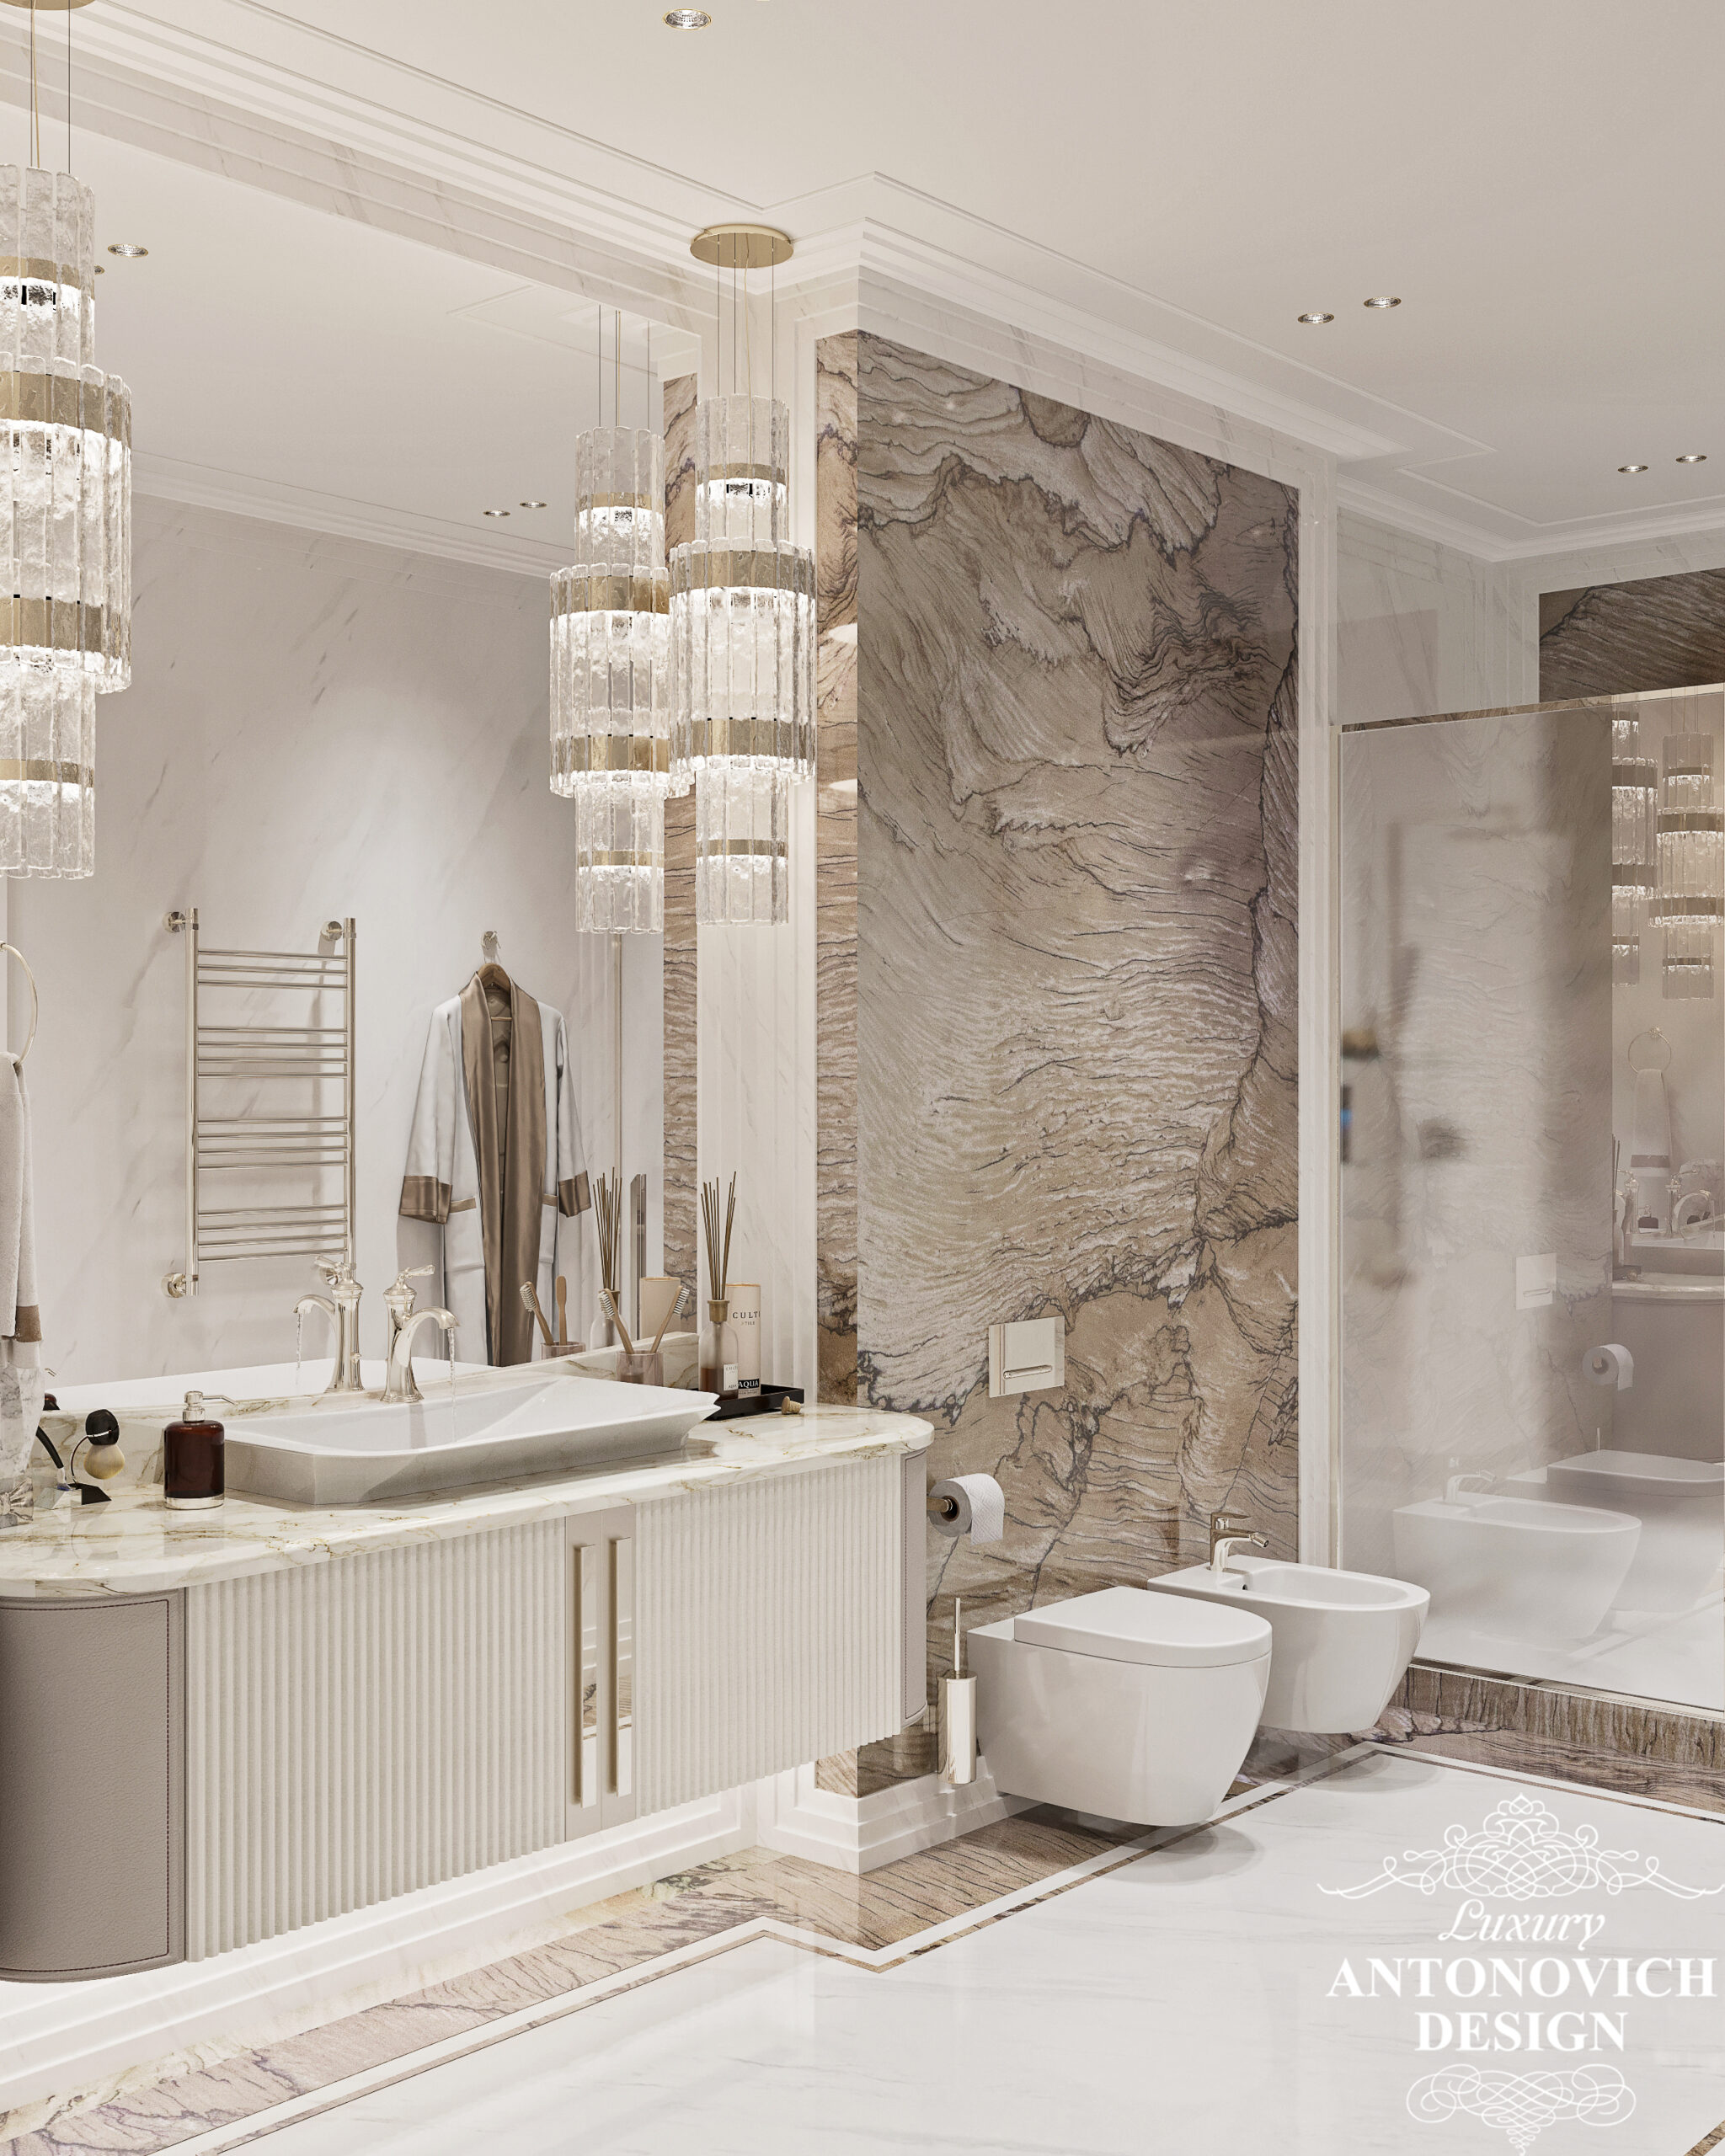 Мраморный сляб, отделка из мрамора в дизайне элегантной ванной комнаты в светлых оттенках. Дизайн ванной комнаты в Киеве